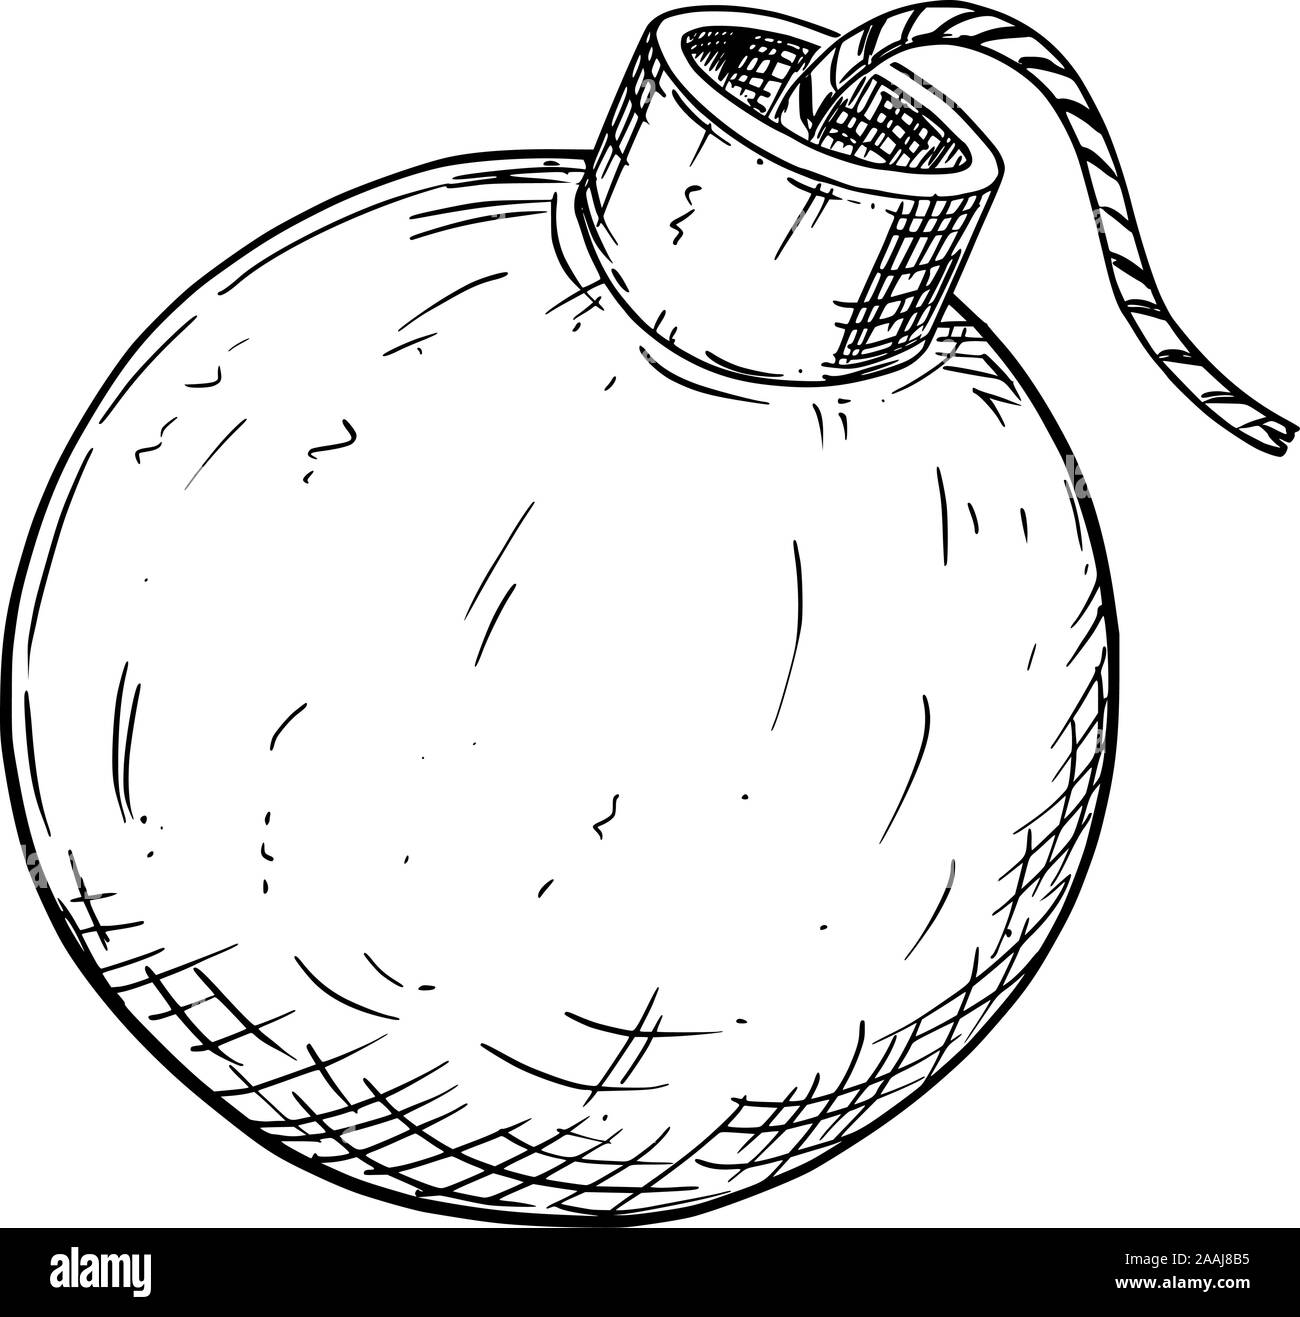 Vector illustration ou dessin de bombe avec fusible Image Vectorielle Stock  - Alamy